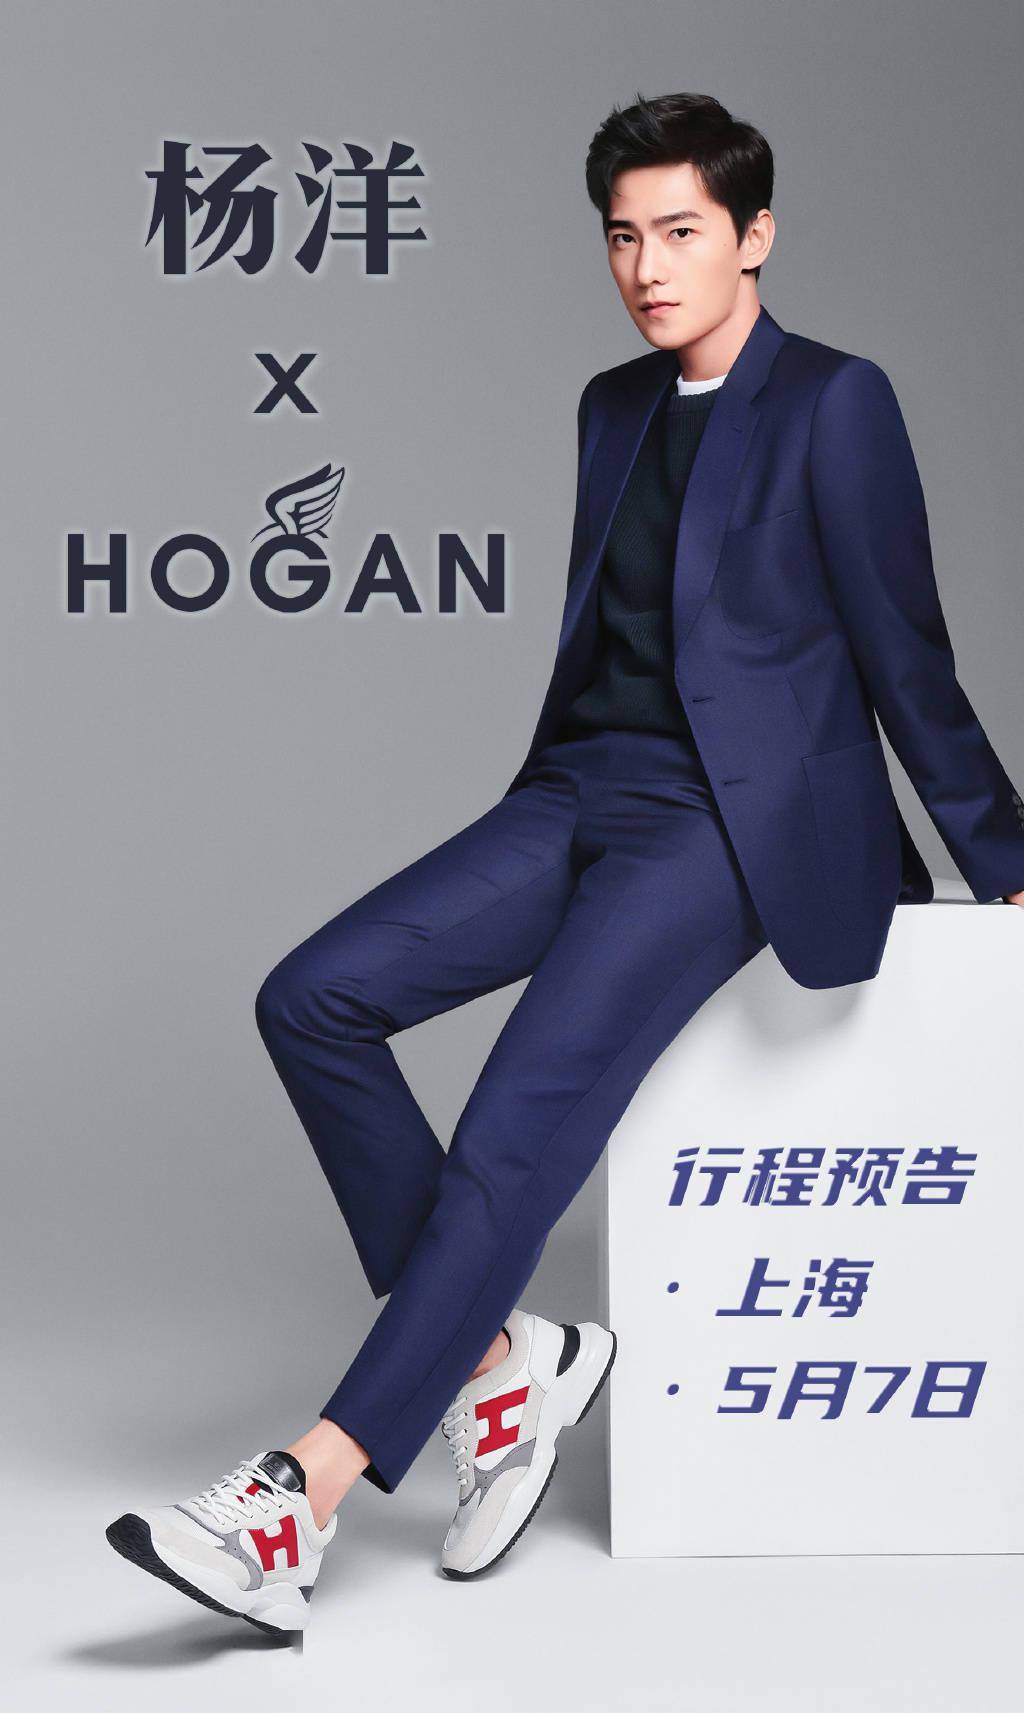 杨洋五月新行程确认!将于5月7日现身上海出席hogan品牌活动